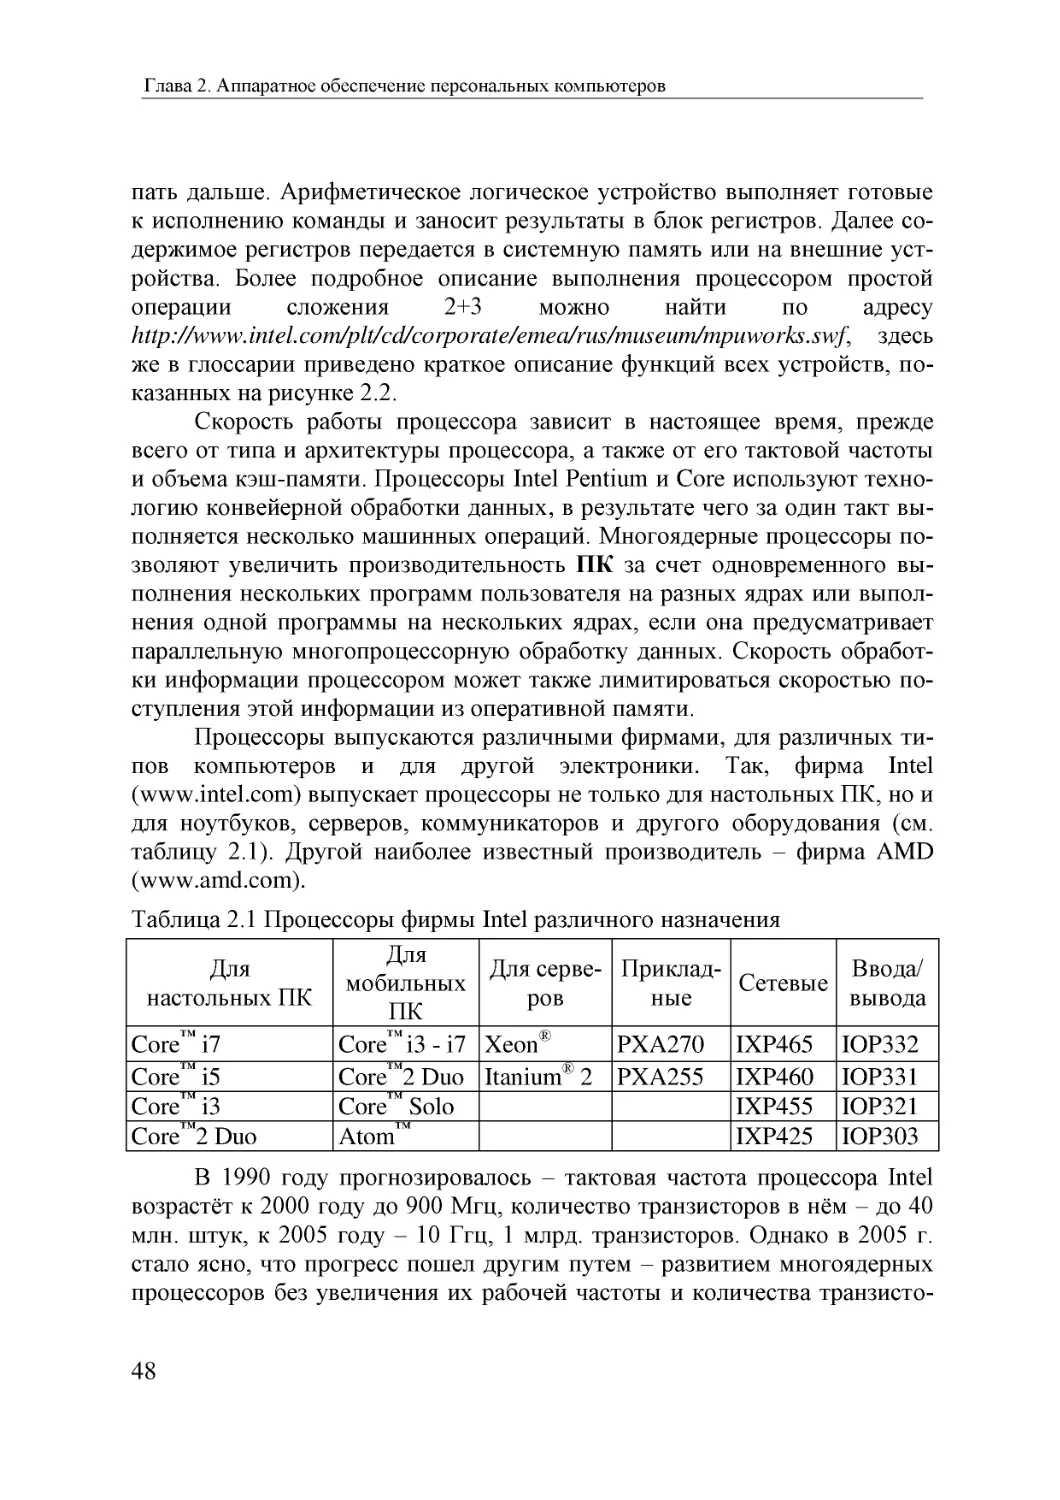 Informatika_Uchebnik_dlya_vuzov_2010 48